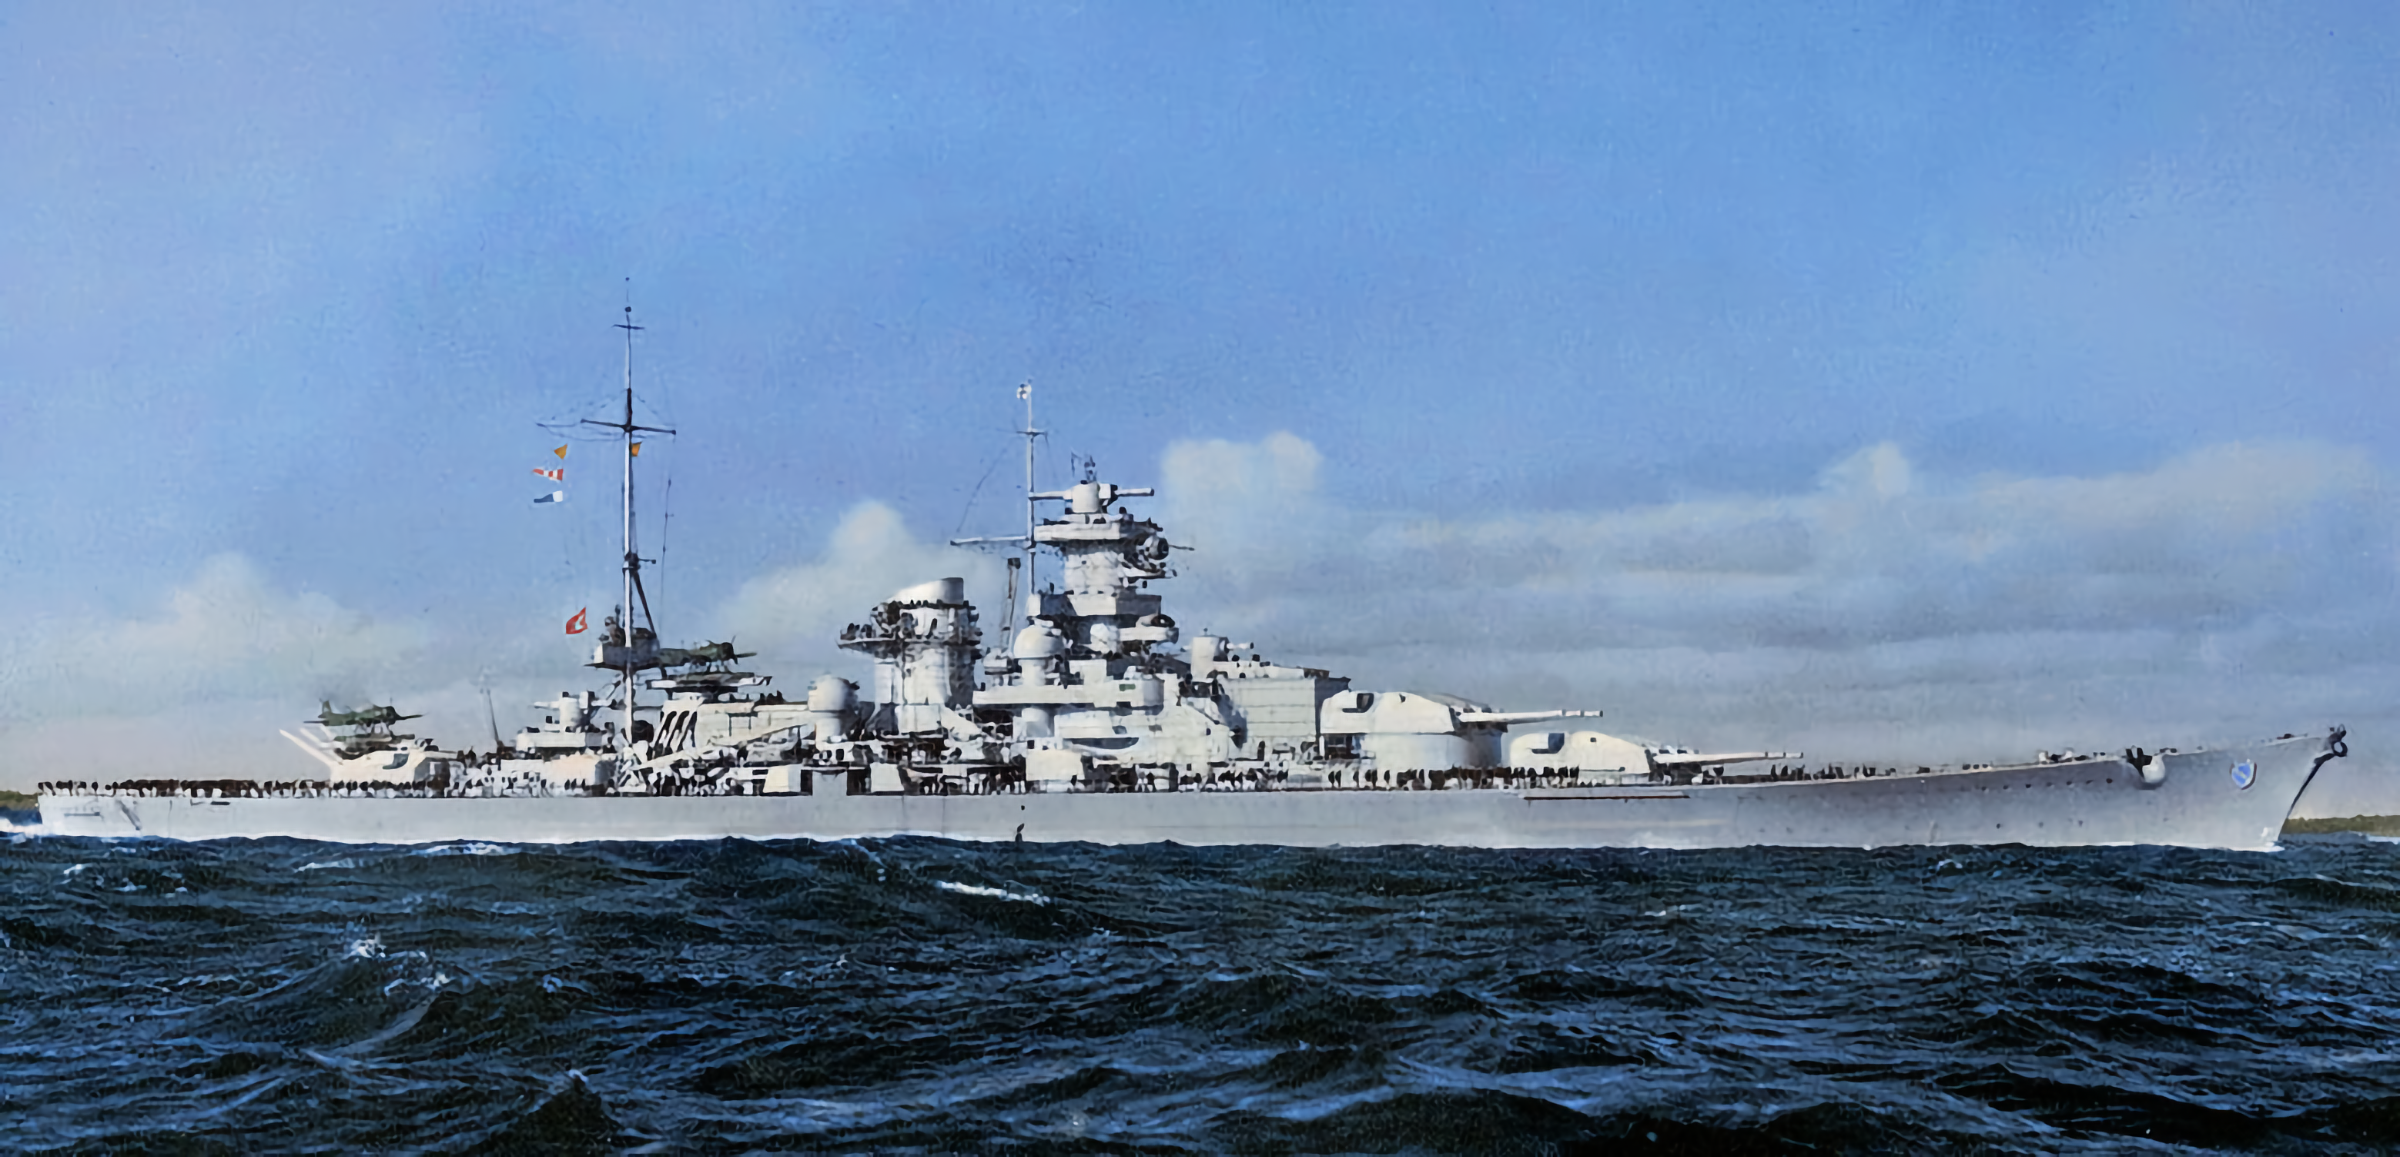 Acorazado Scharnhorst